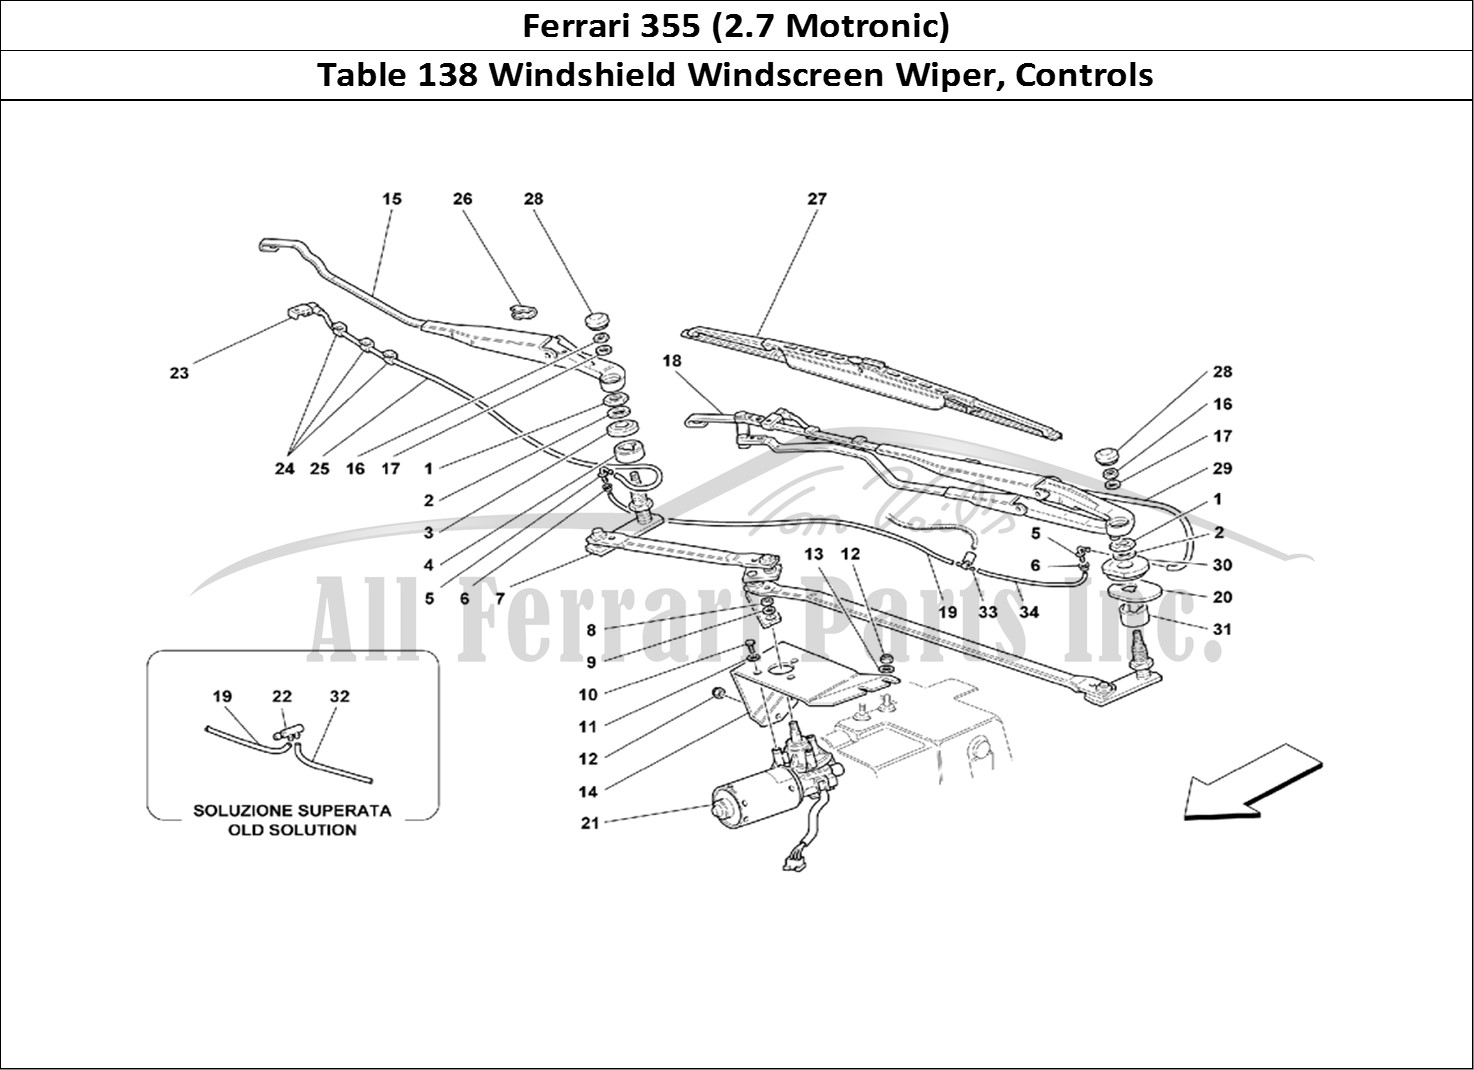 Ferrari Parts Ferrari 355 (2.7 Motronic) Page 138 Windshield Wiper and Cont